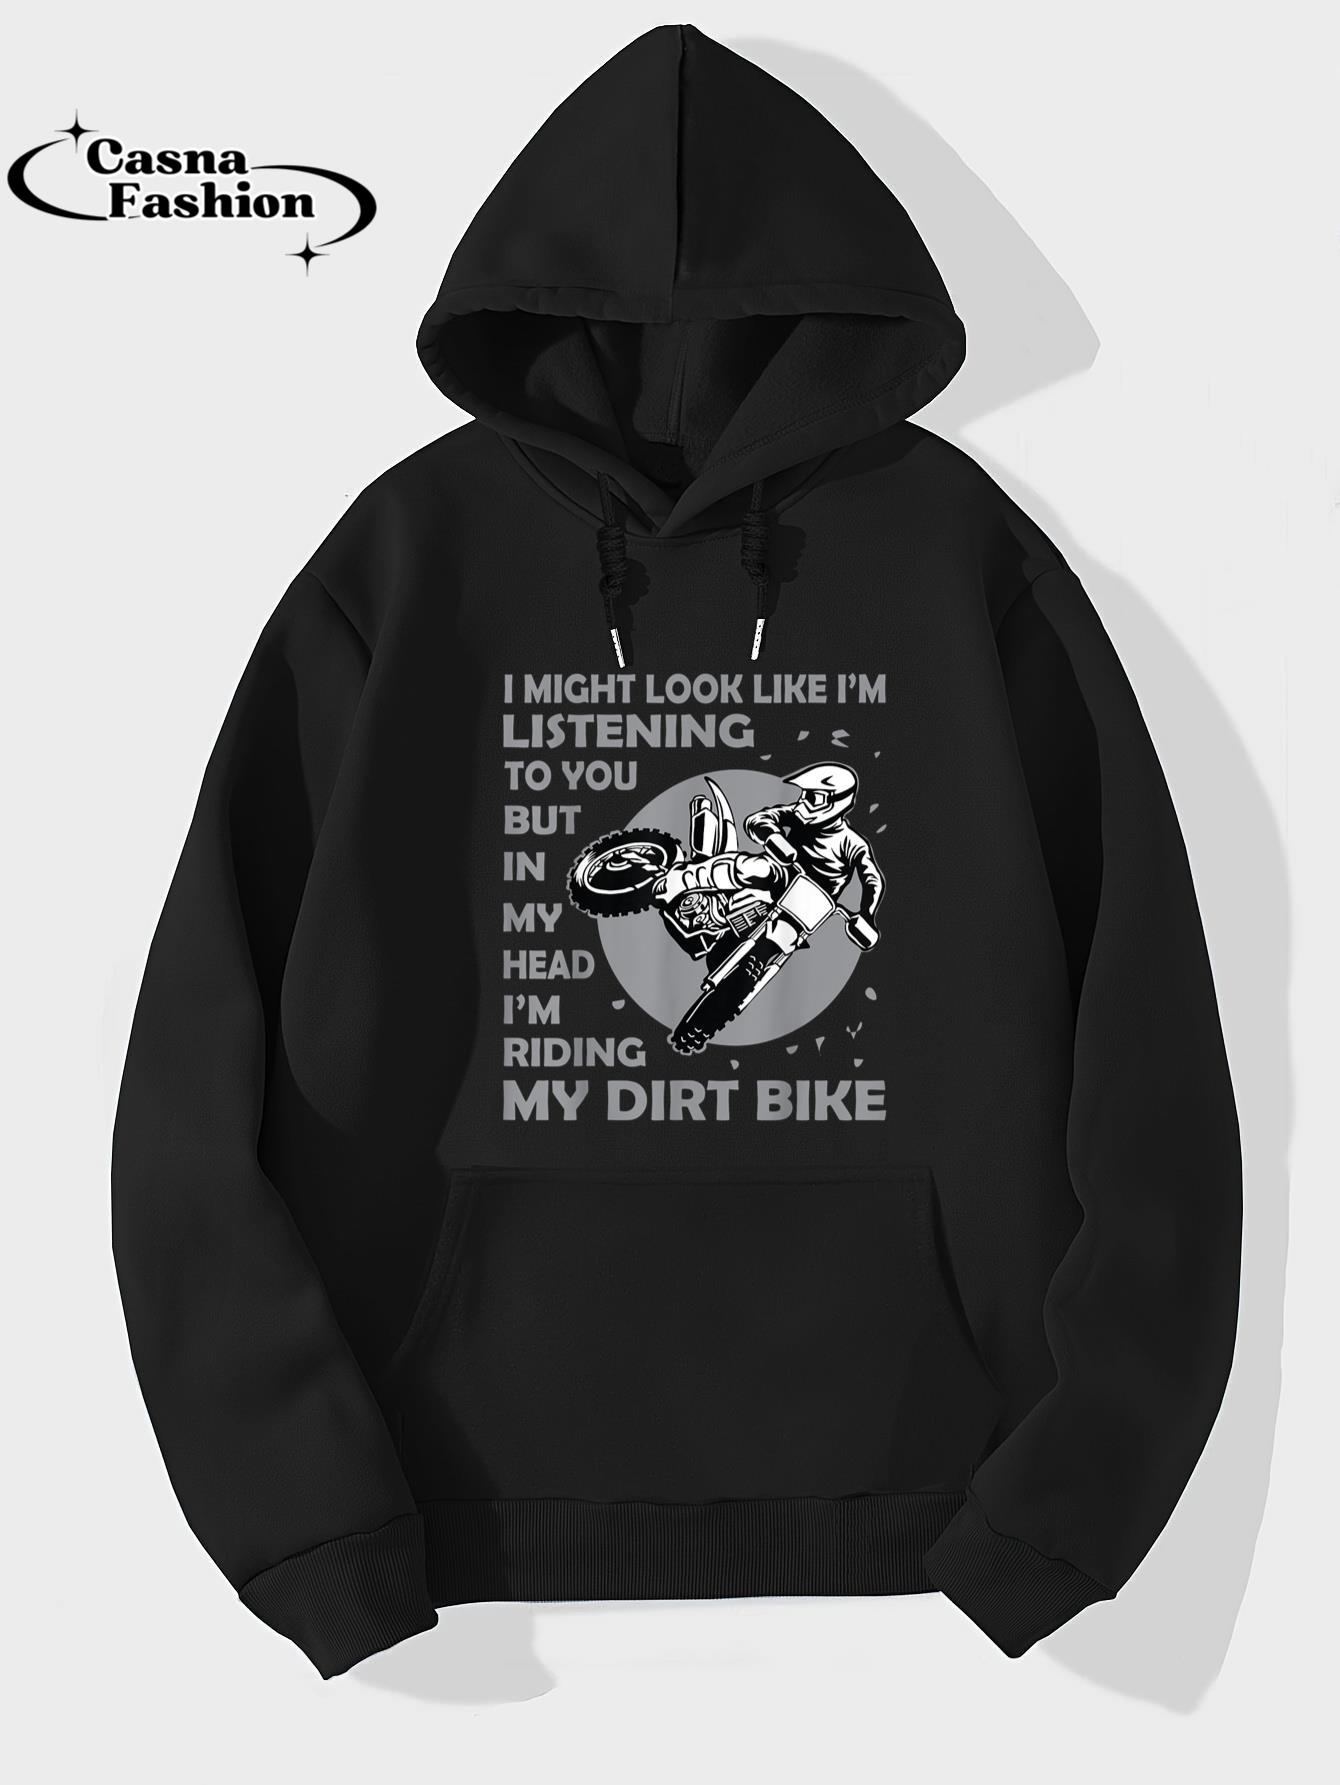 casnafashion_Hoodie_Best Dirt Bike Art For Men Women Dirtbike Motorcycle Riding T-Shirt_hoodie_black hoodie